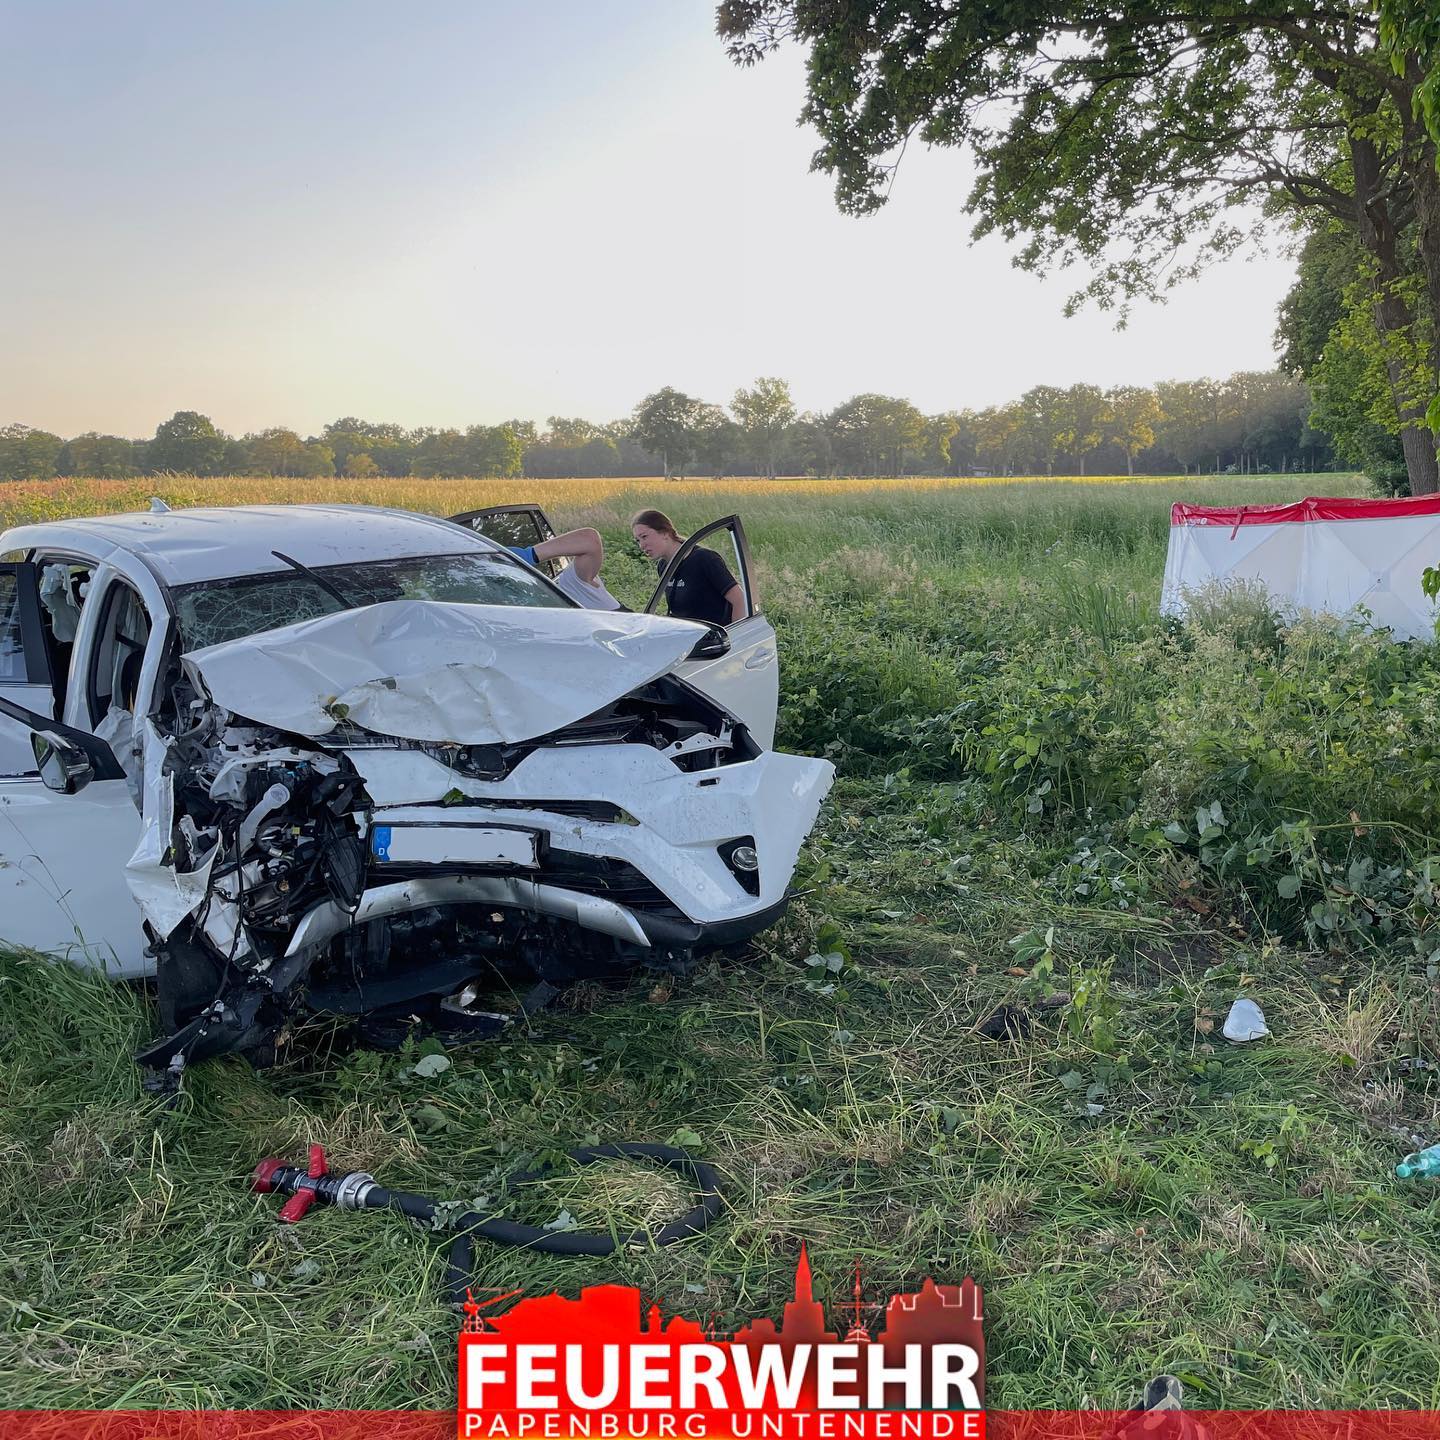 Die Unfallstelle in Papenburg: Bei dem Unglück kam ein Mann ums Leben.